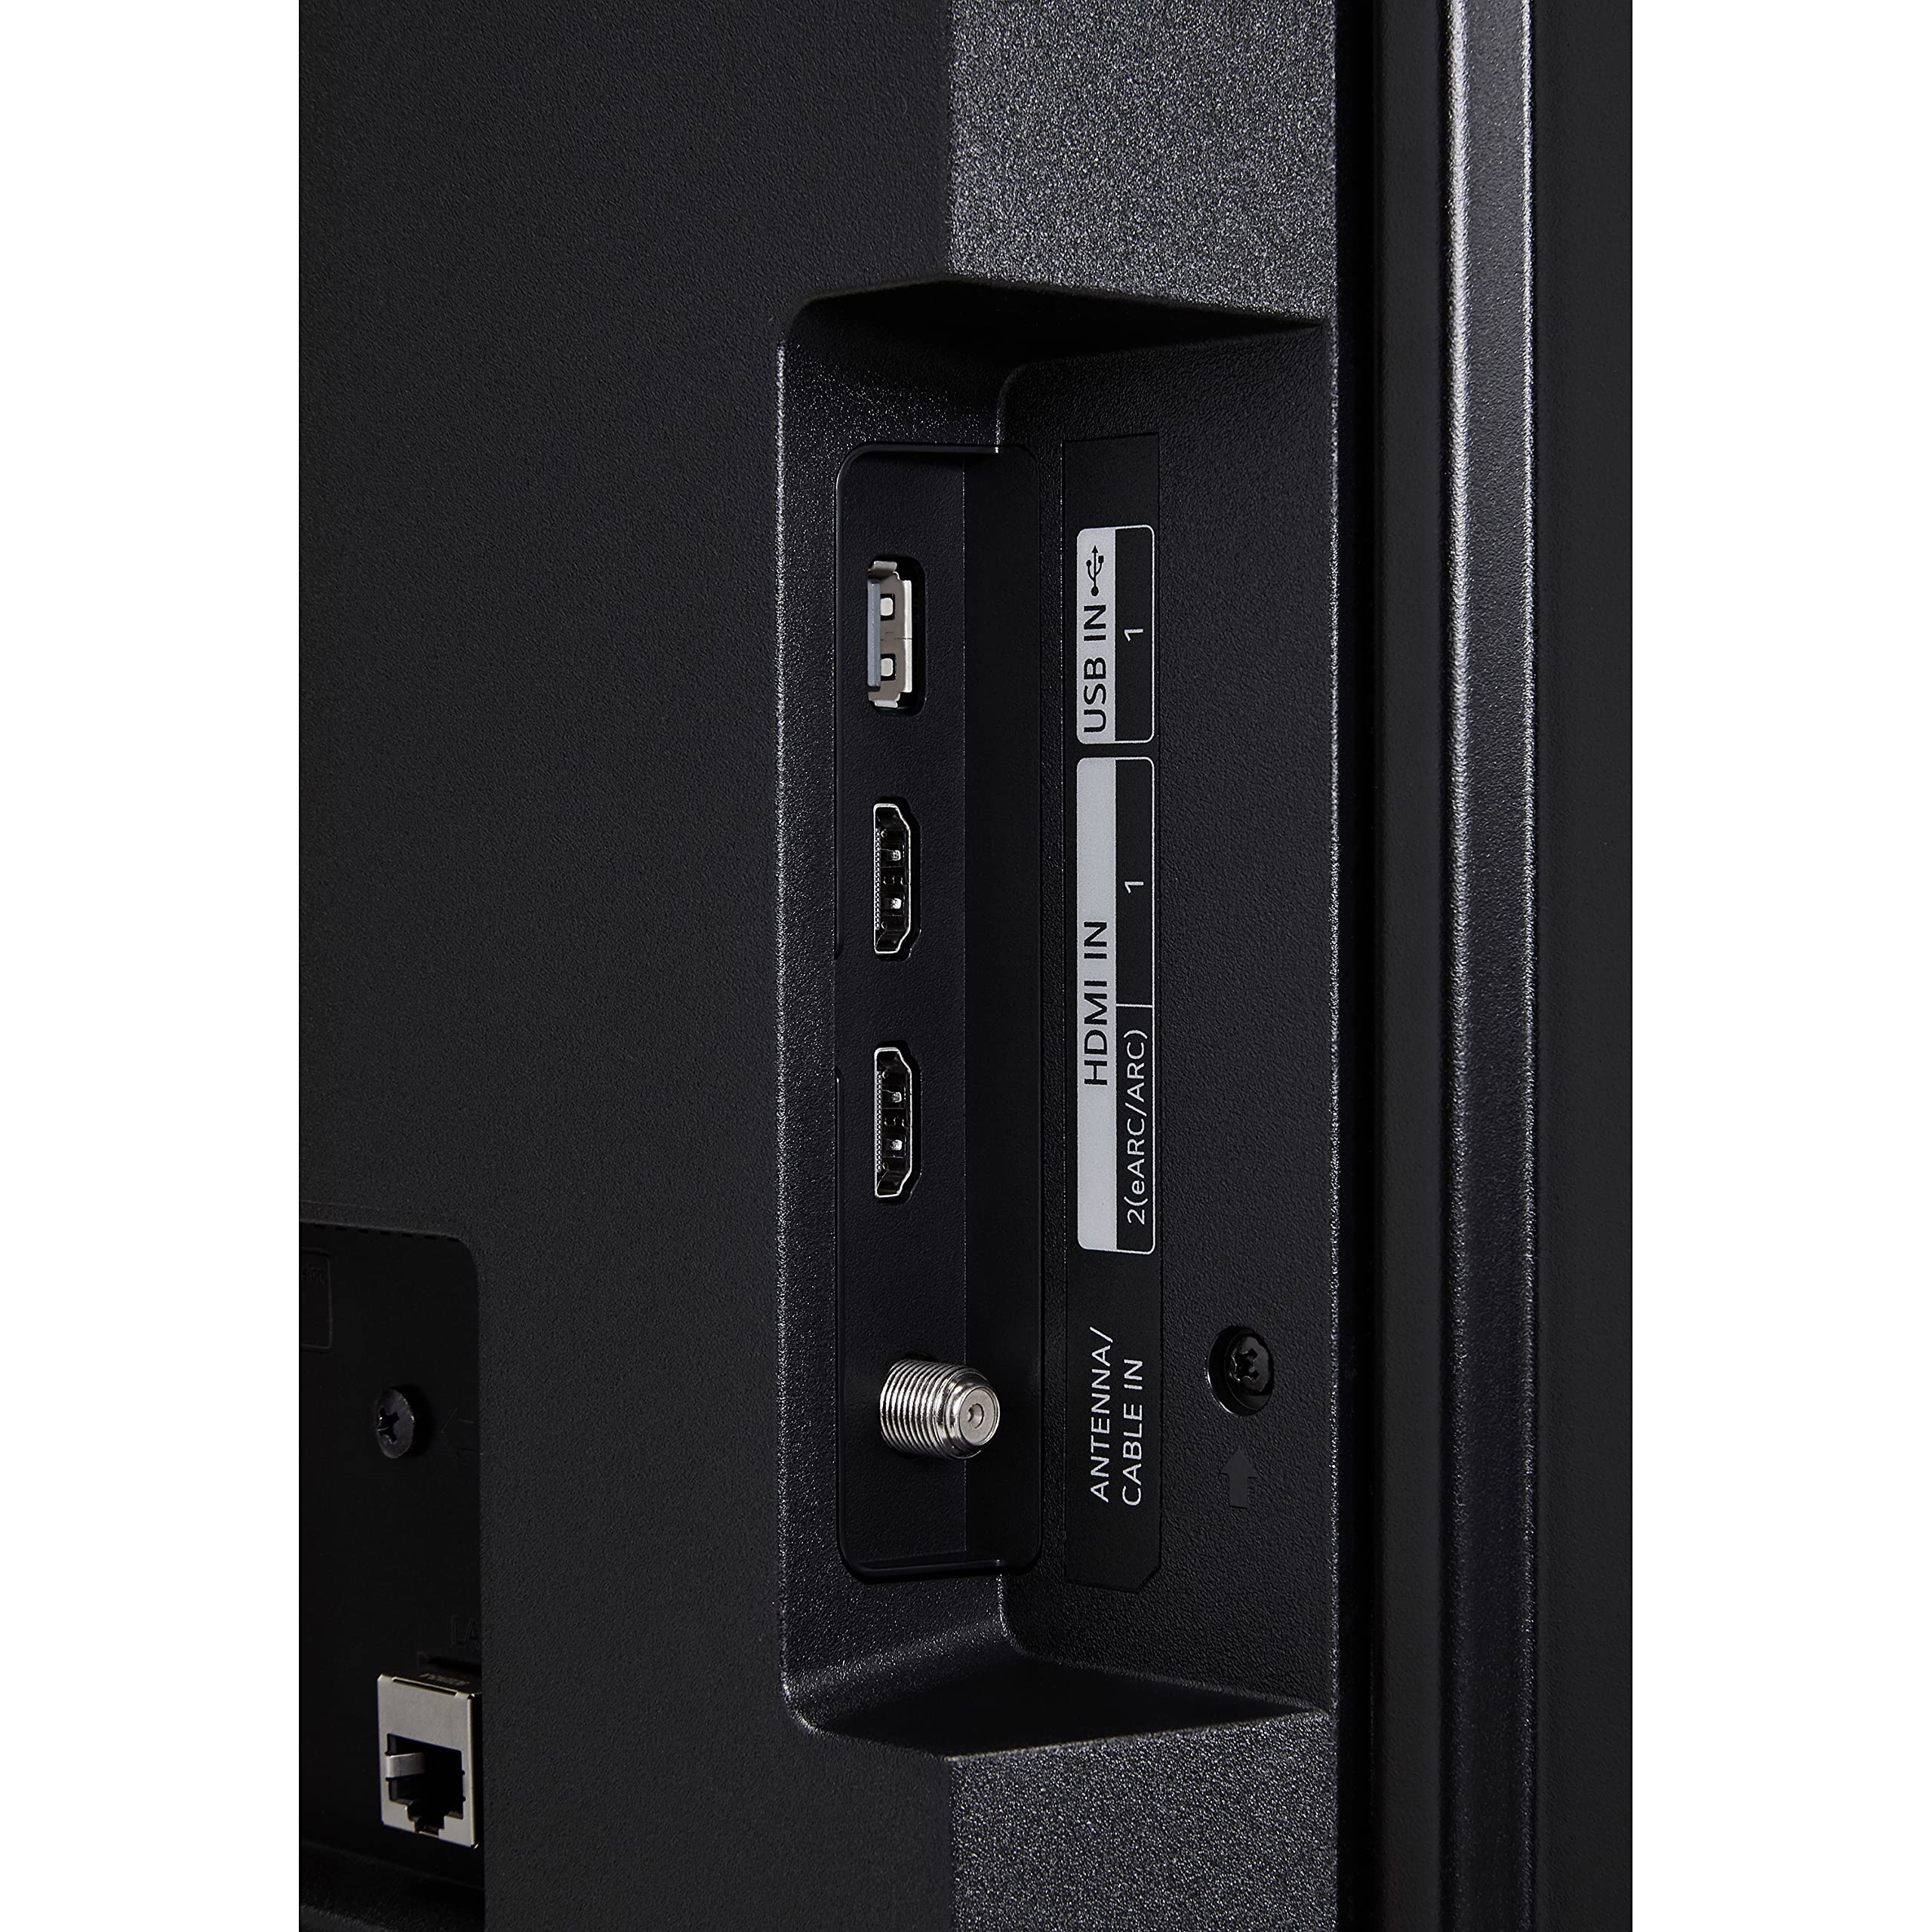 LG UHD UQ75 Series 50” (50UQ7570PUJ, 2022), Black